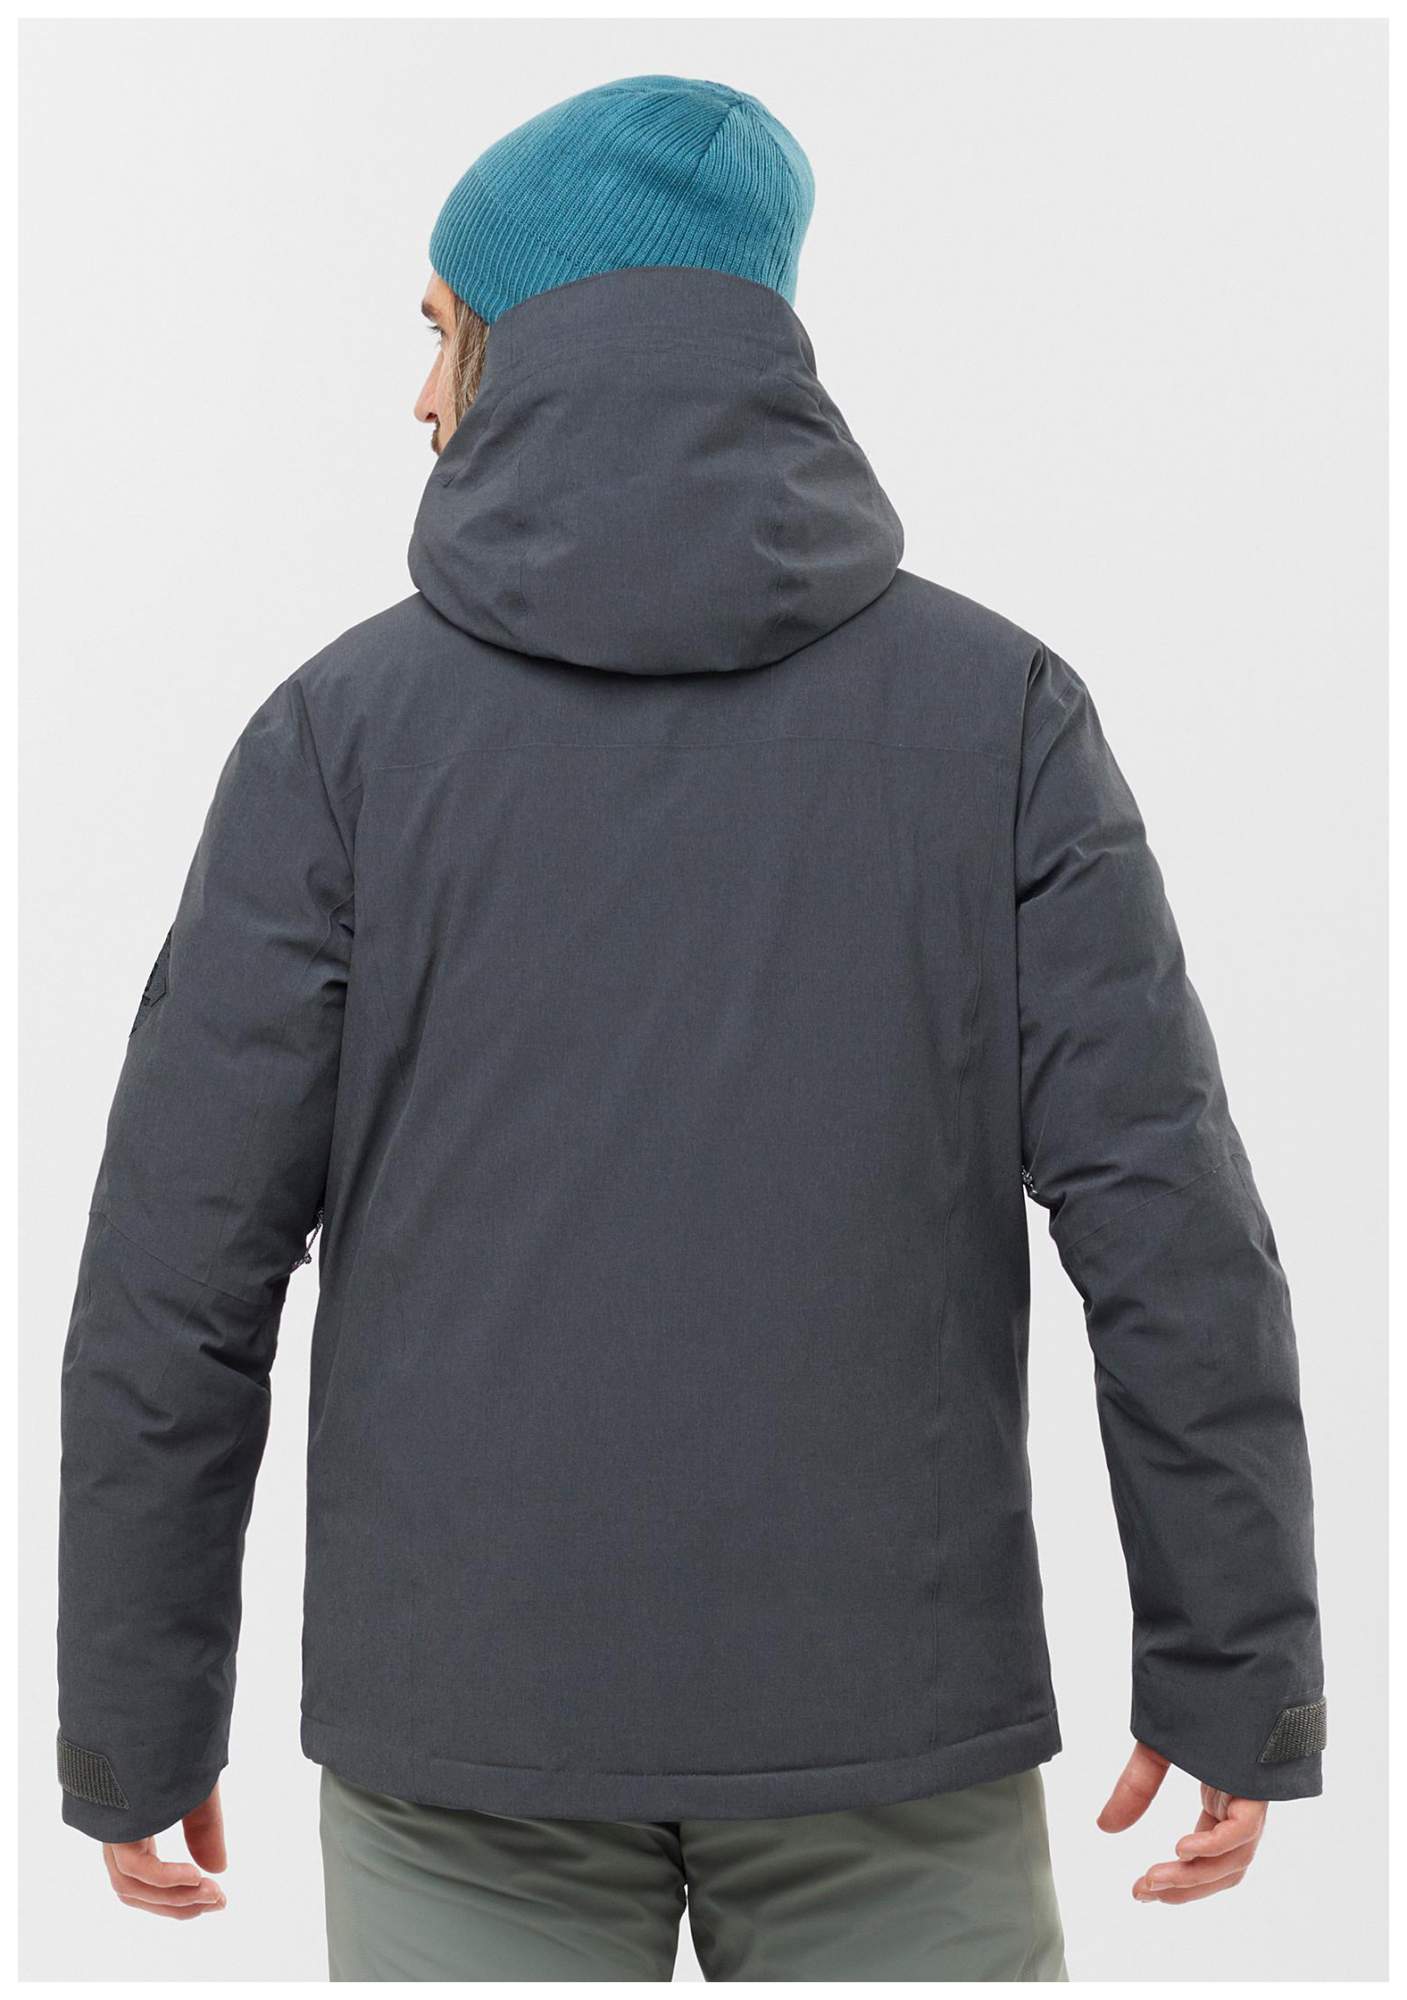 Куртка Salomon Arctic Down, ebony/heather, XL INT